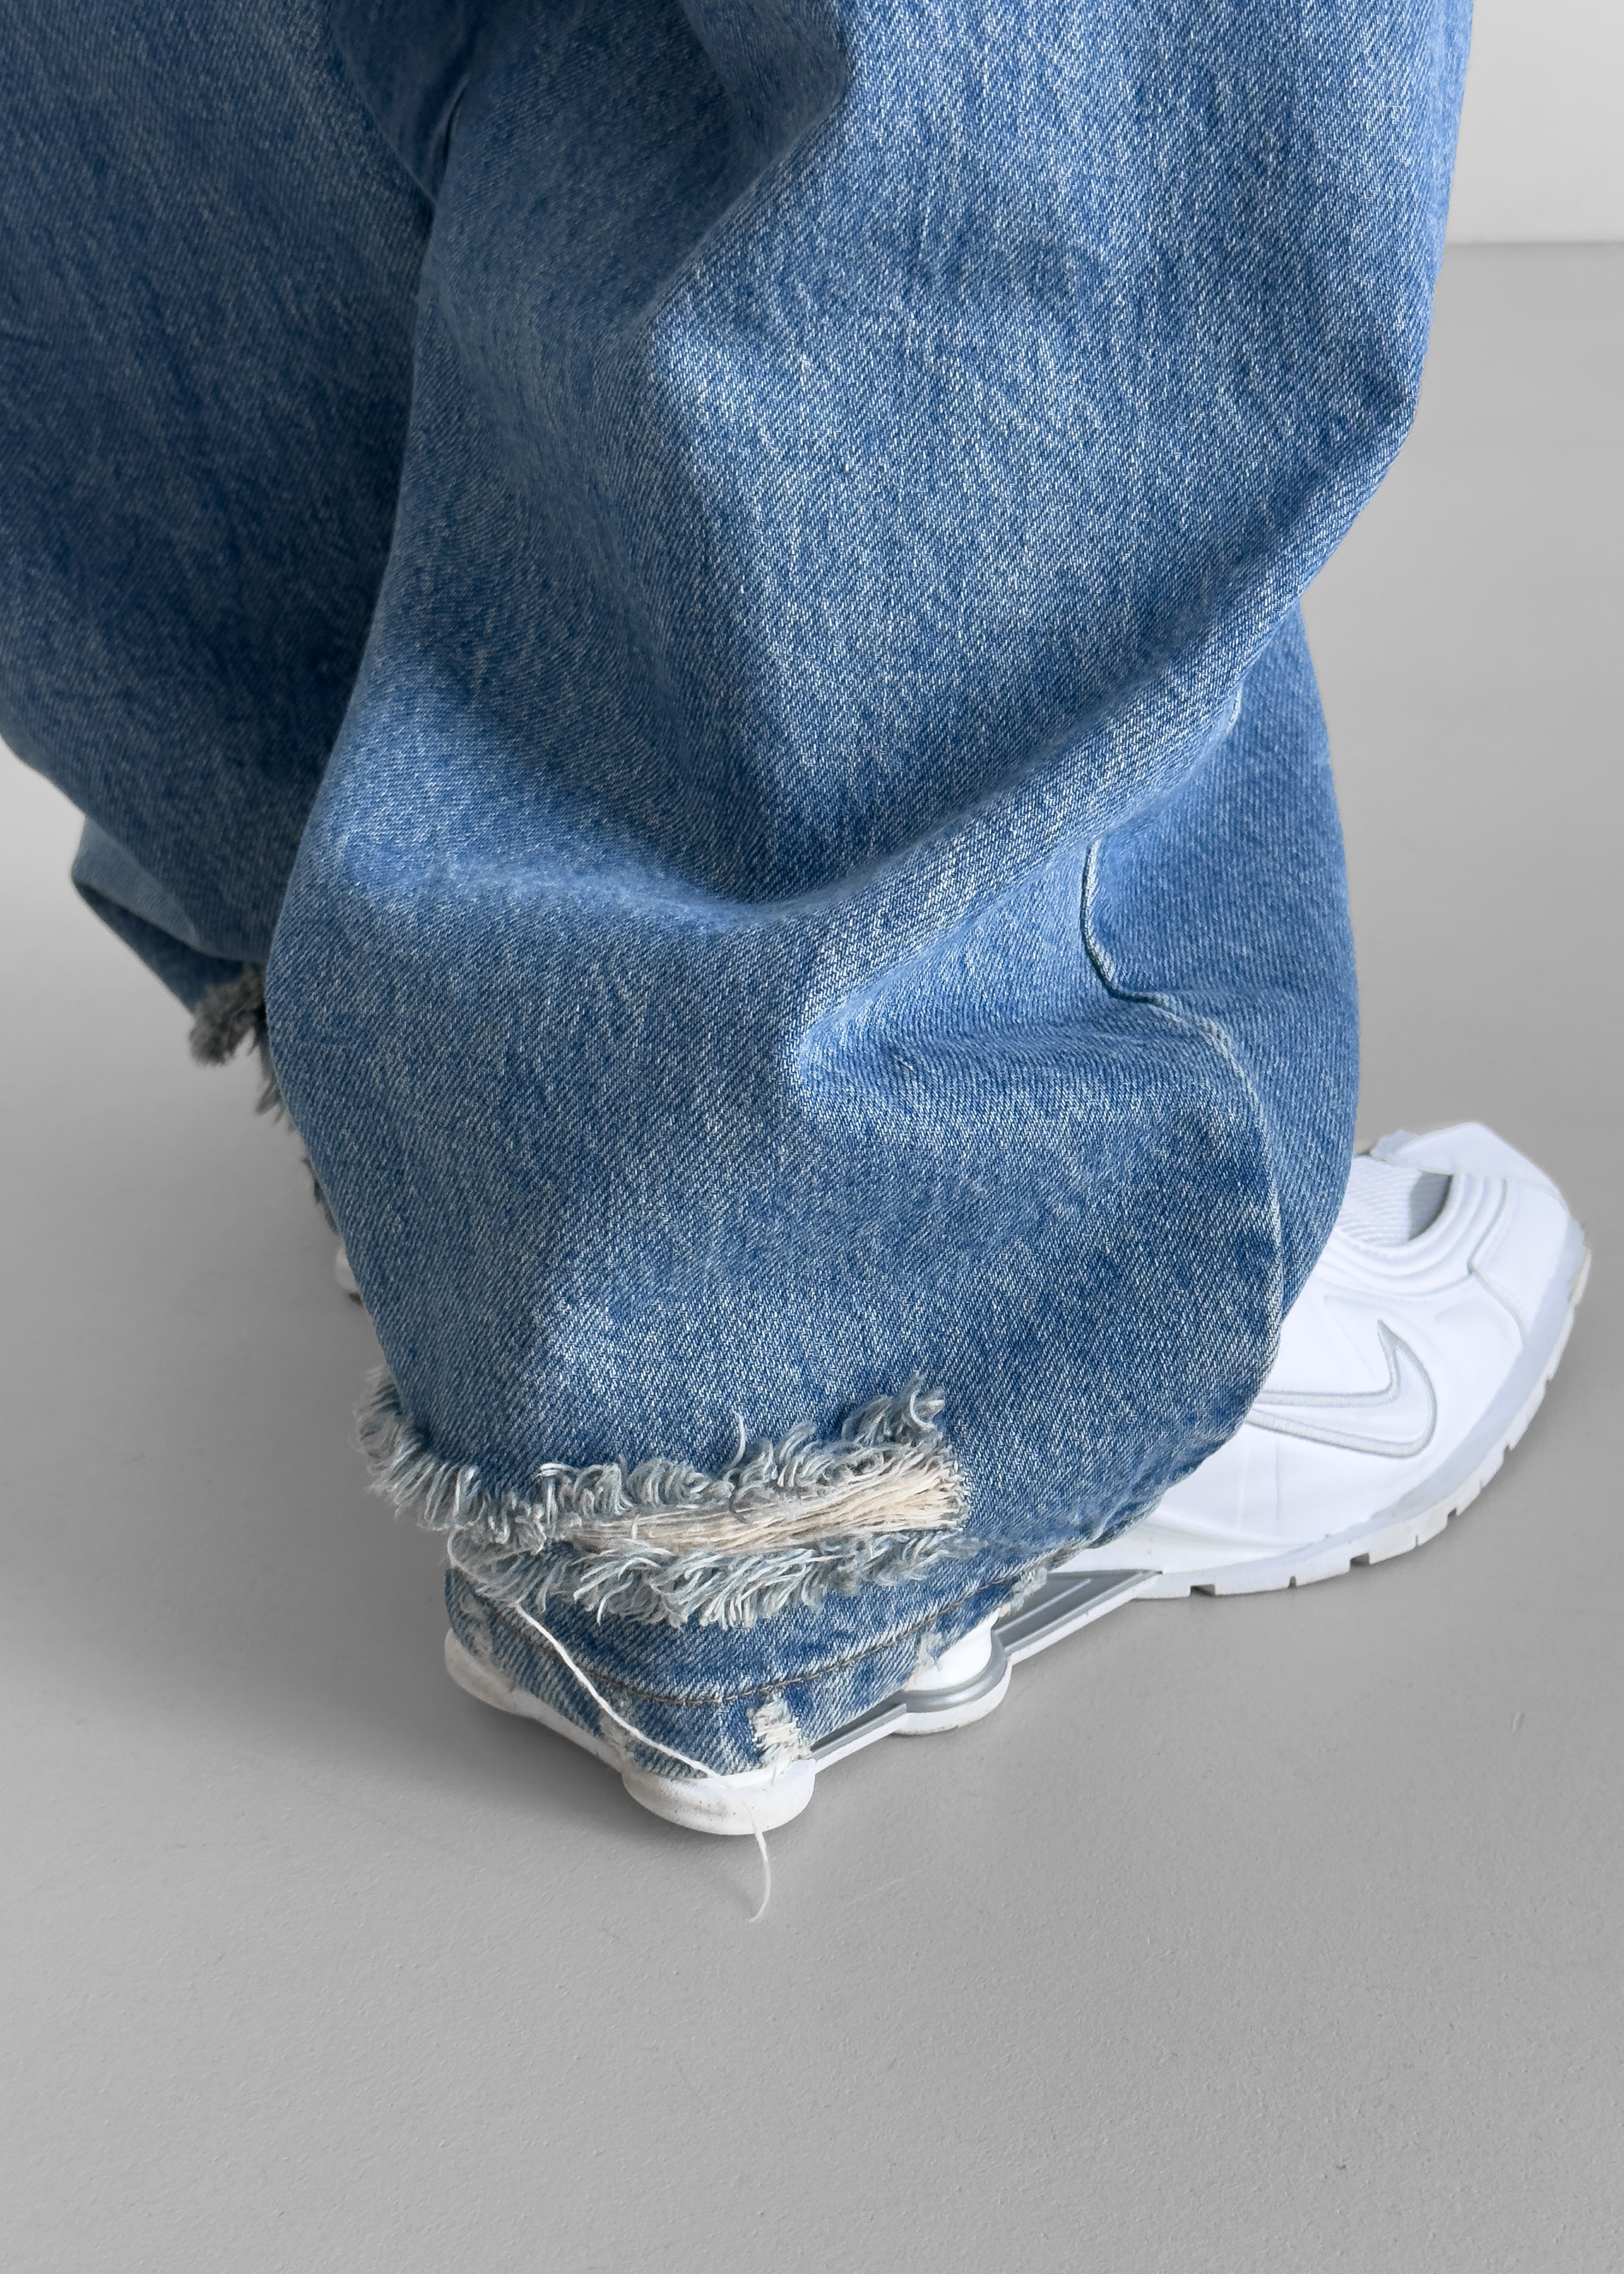 Tanner Bleach Jeans - Worn Wash - 7